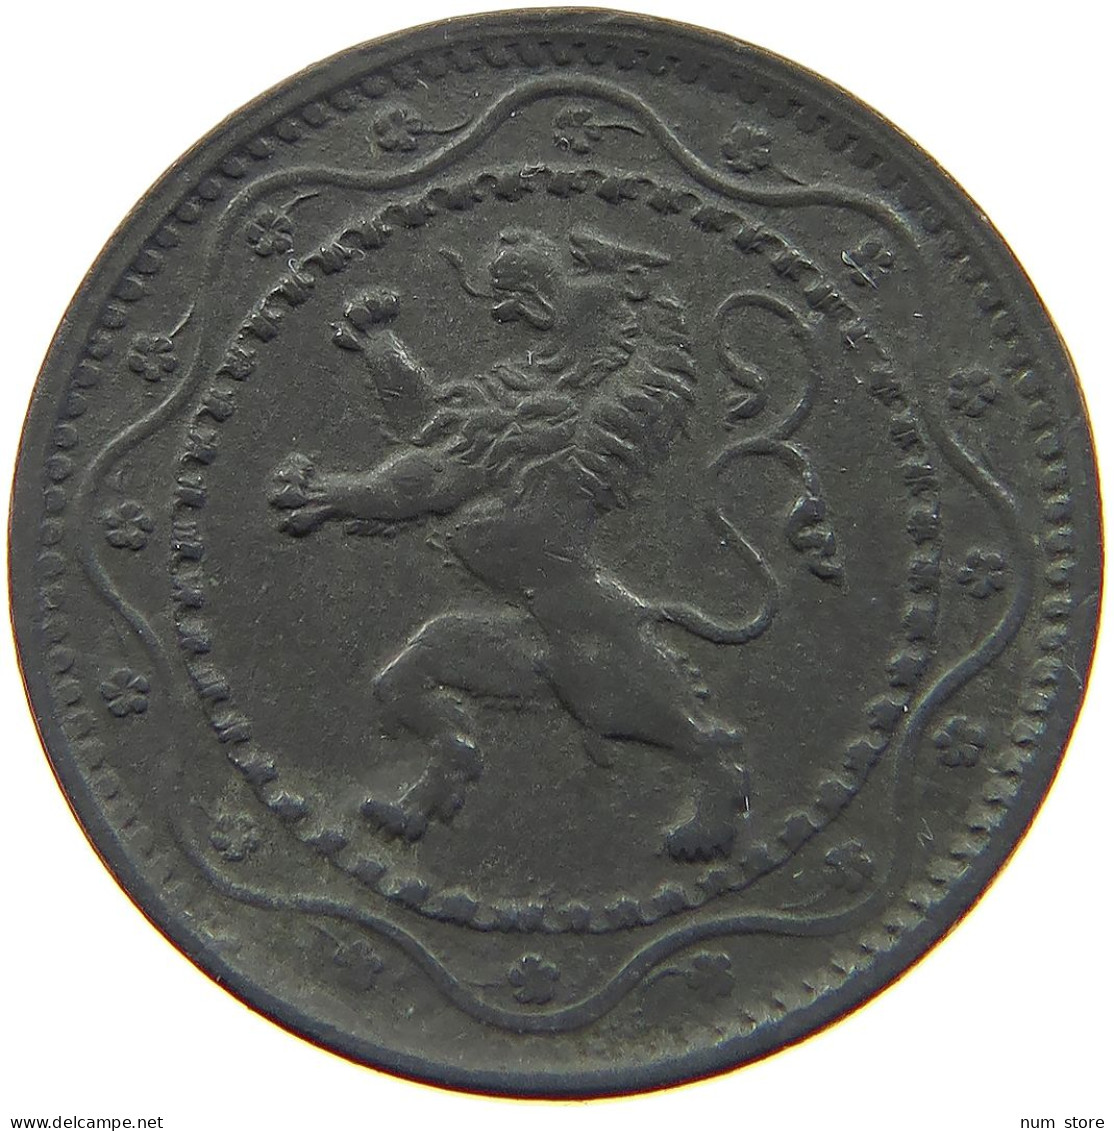 BELGIUM 5 CENTIMES 1916 #a006 0547 - 5 Cents